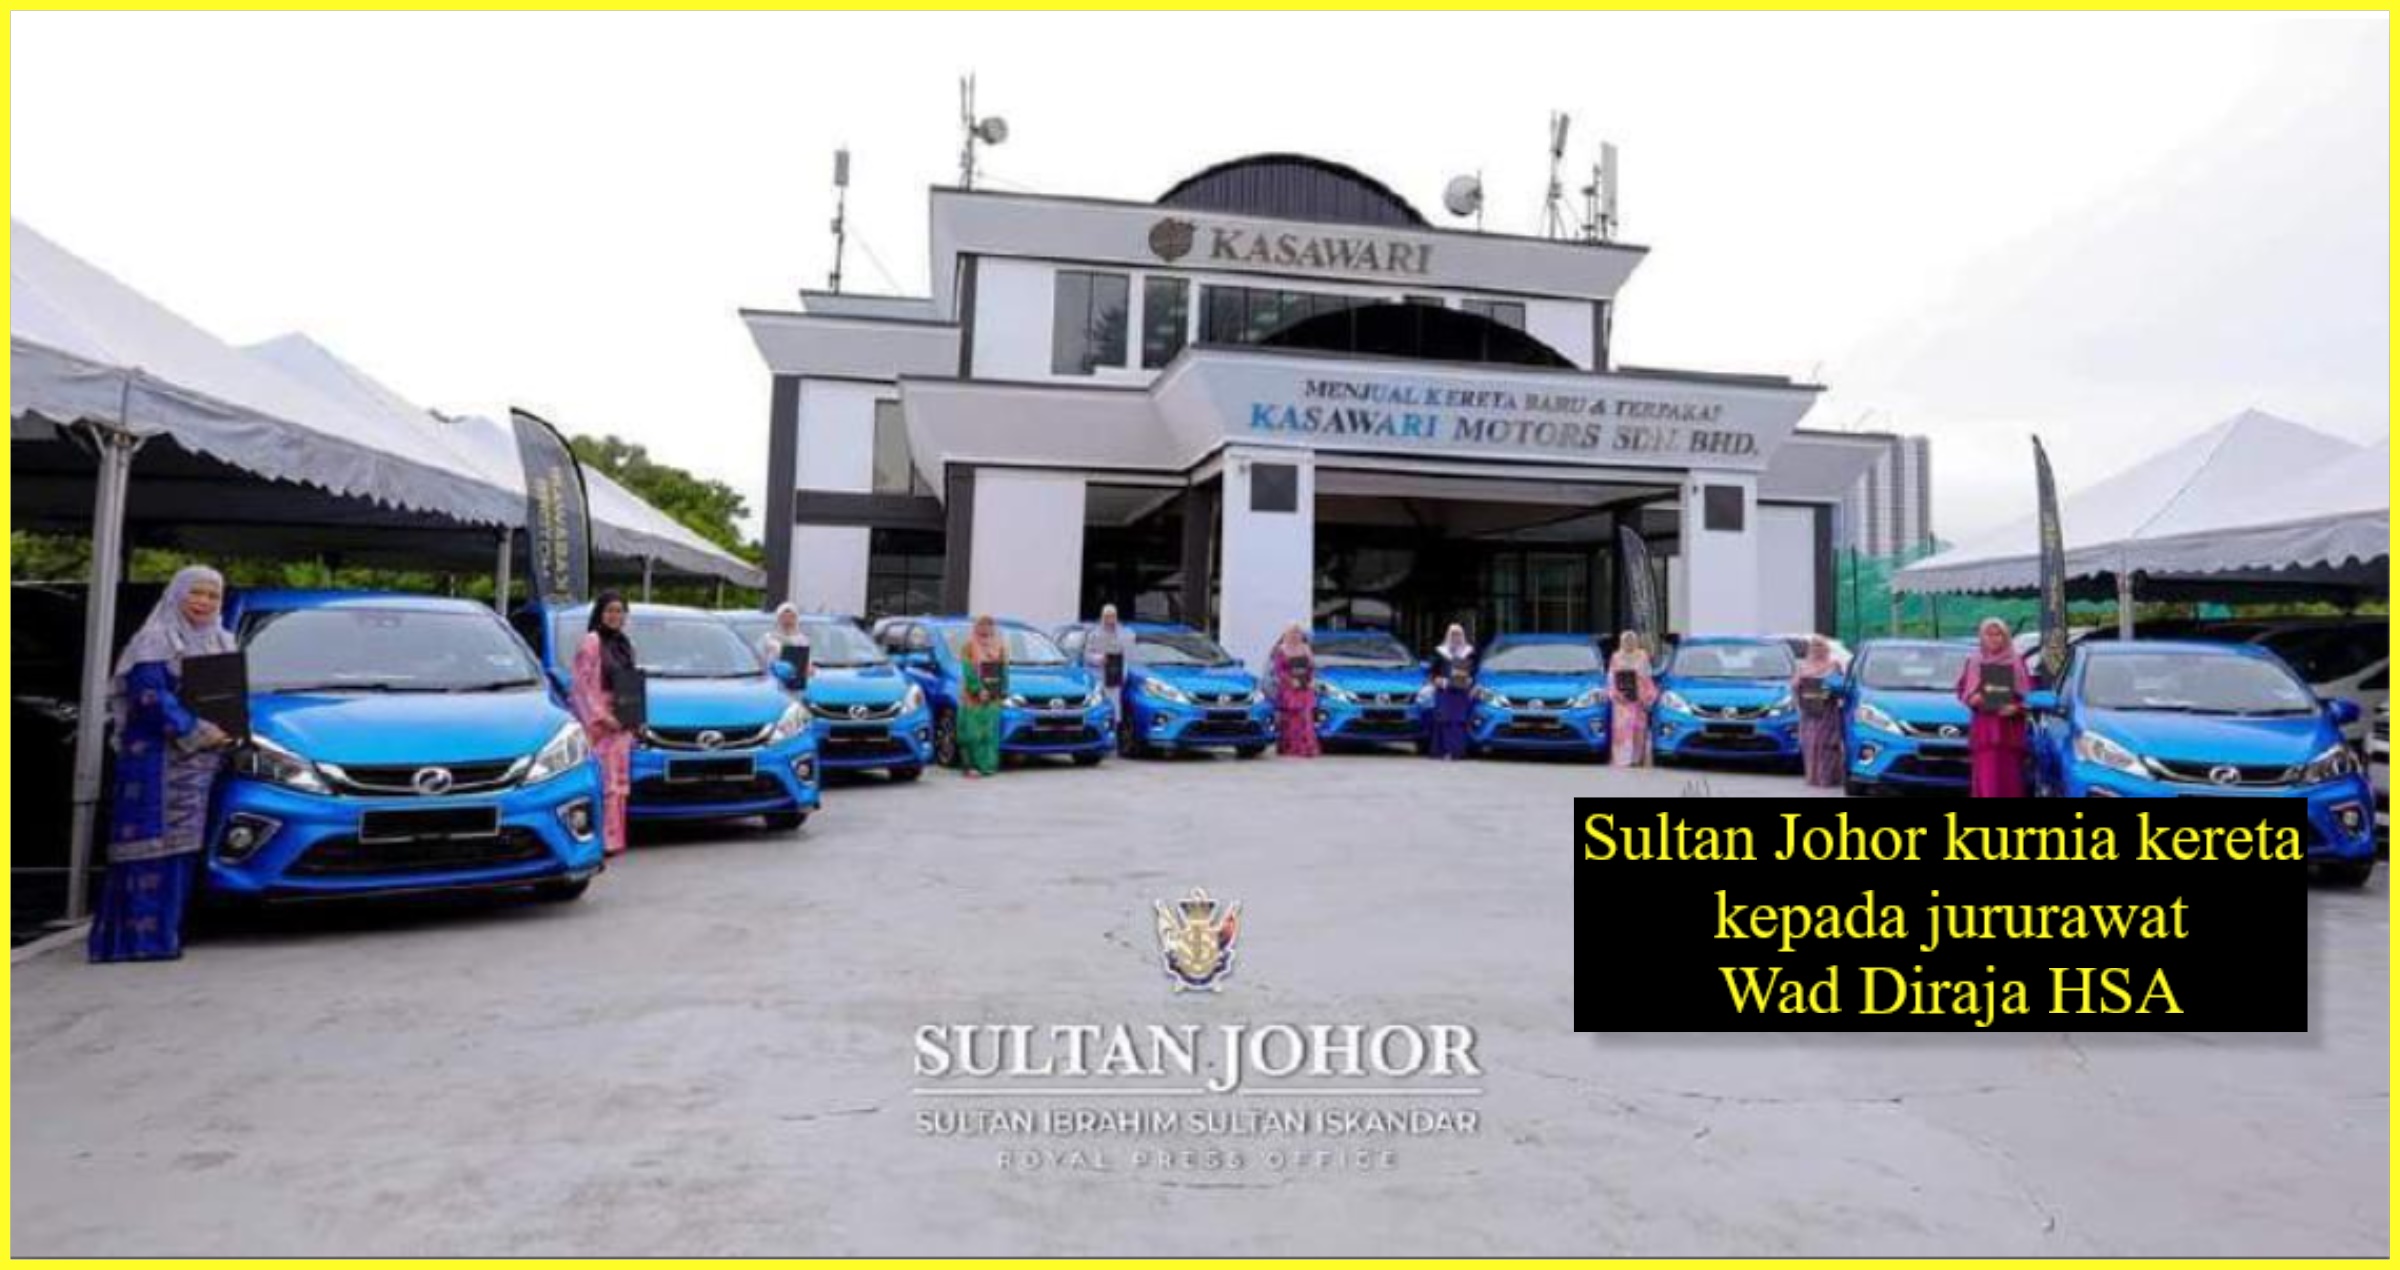 Sultan Johor Kurnia Kereta Kepada Jururawat Wad Diraja Hsa Metro Kini